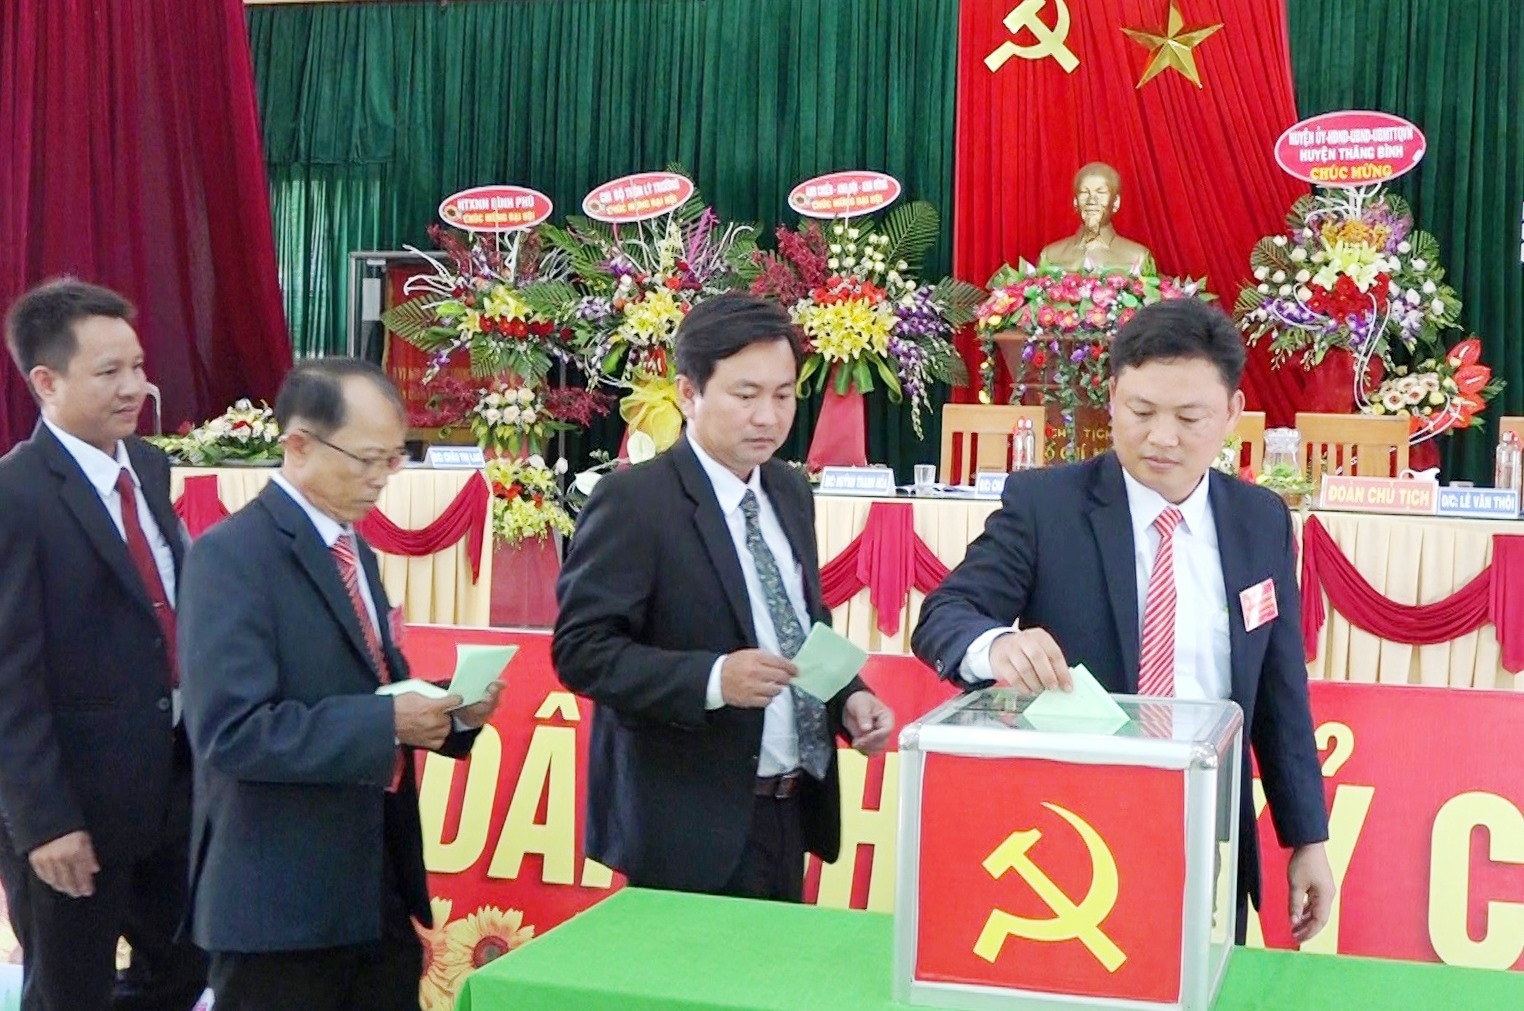 Bầu Ban Chấp hành Đảng bộ xã Bình Phú nhiệm kỳ 2020 – 2025. Ảnh: CHÂU TÂN